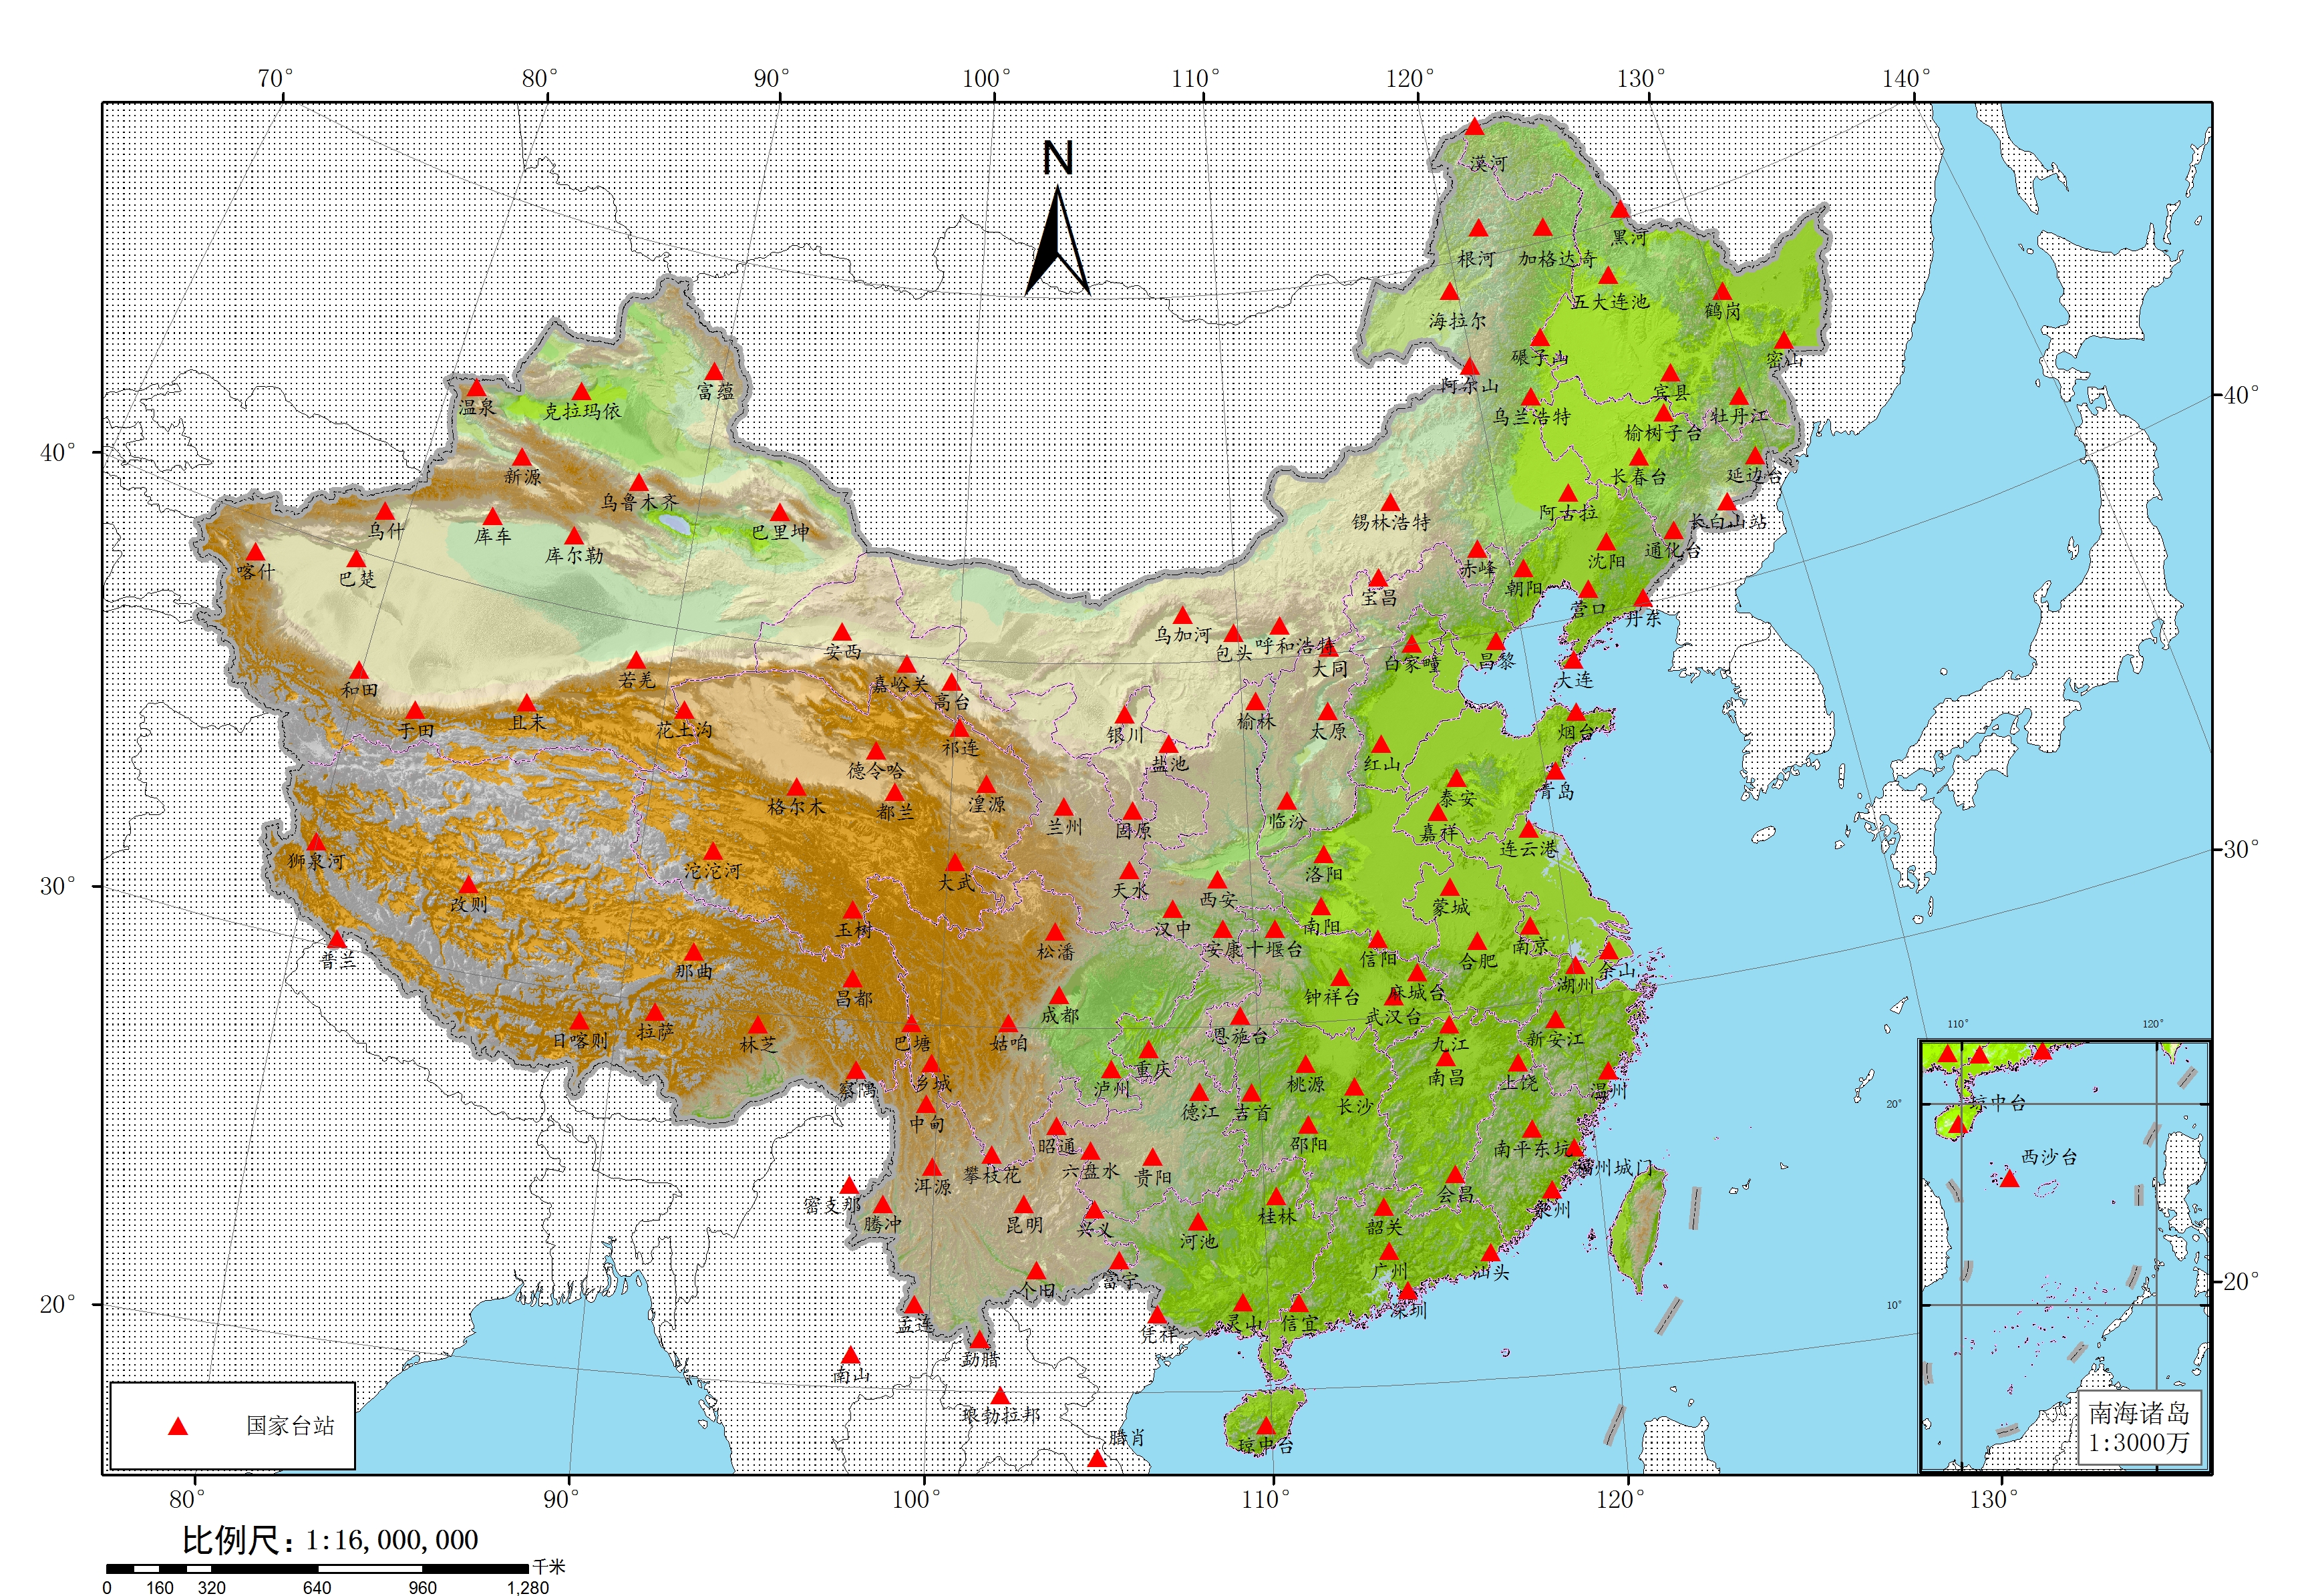 1c47bf2cc7544eb89445bcb9b2be17f2#2021年3月02日17时22分58台湾屏东海域5.2级地震中国台网震相数据集